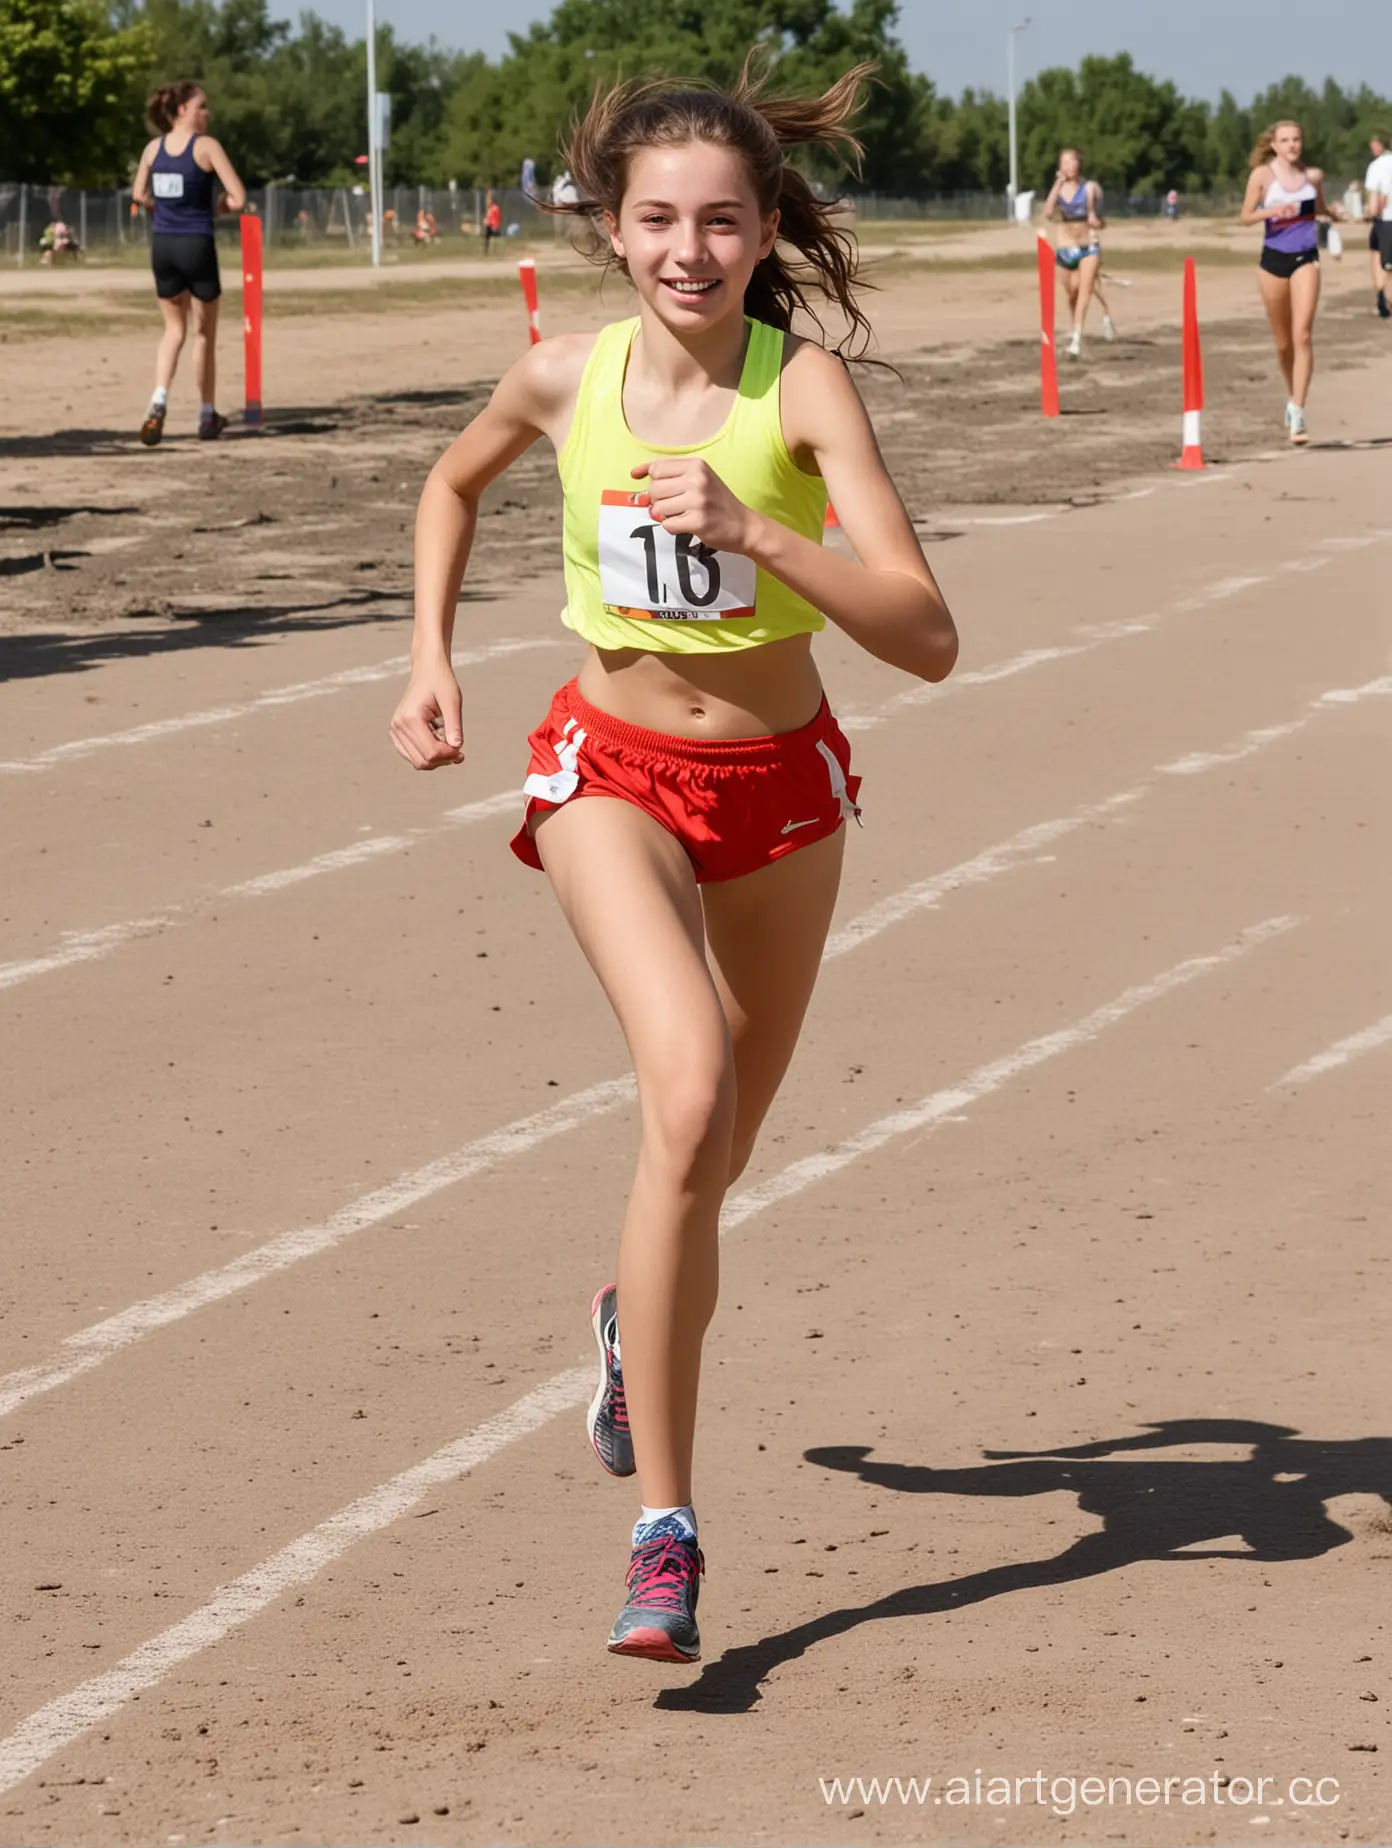 молодая девушка, лет 16, побеждает в соревнованиях по бегу
